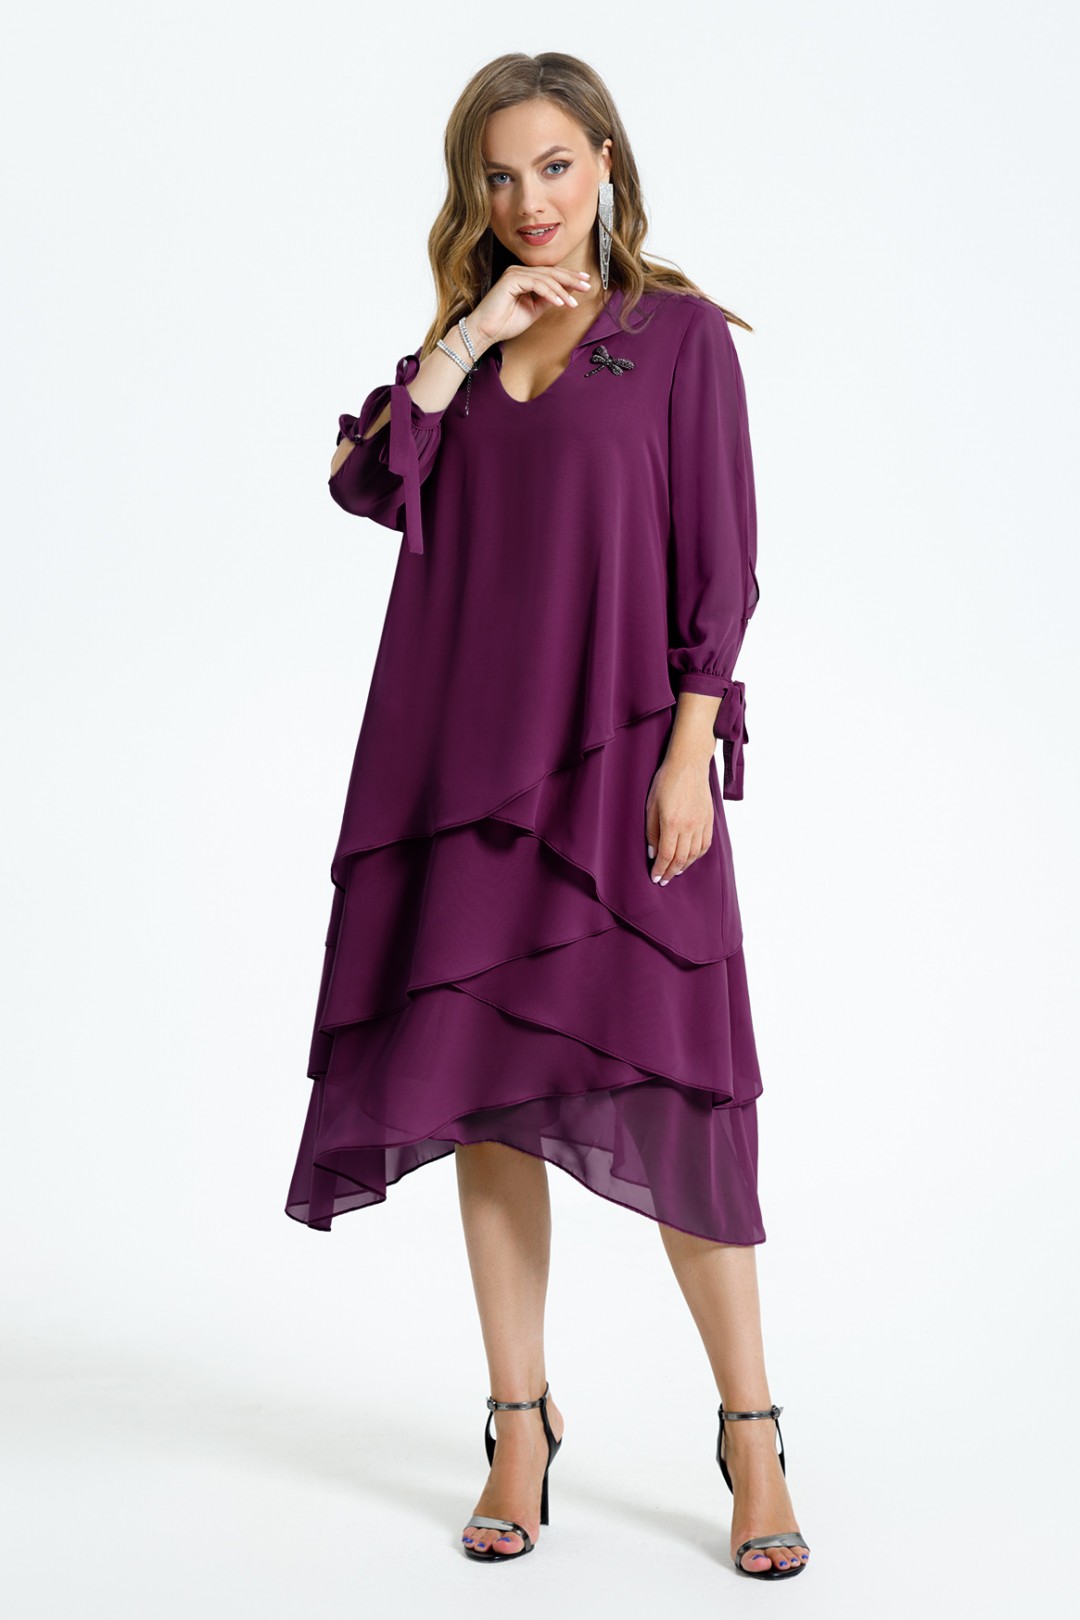 Платье TEZA 1461 фиолетовый